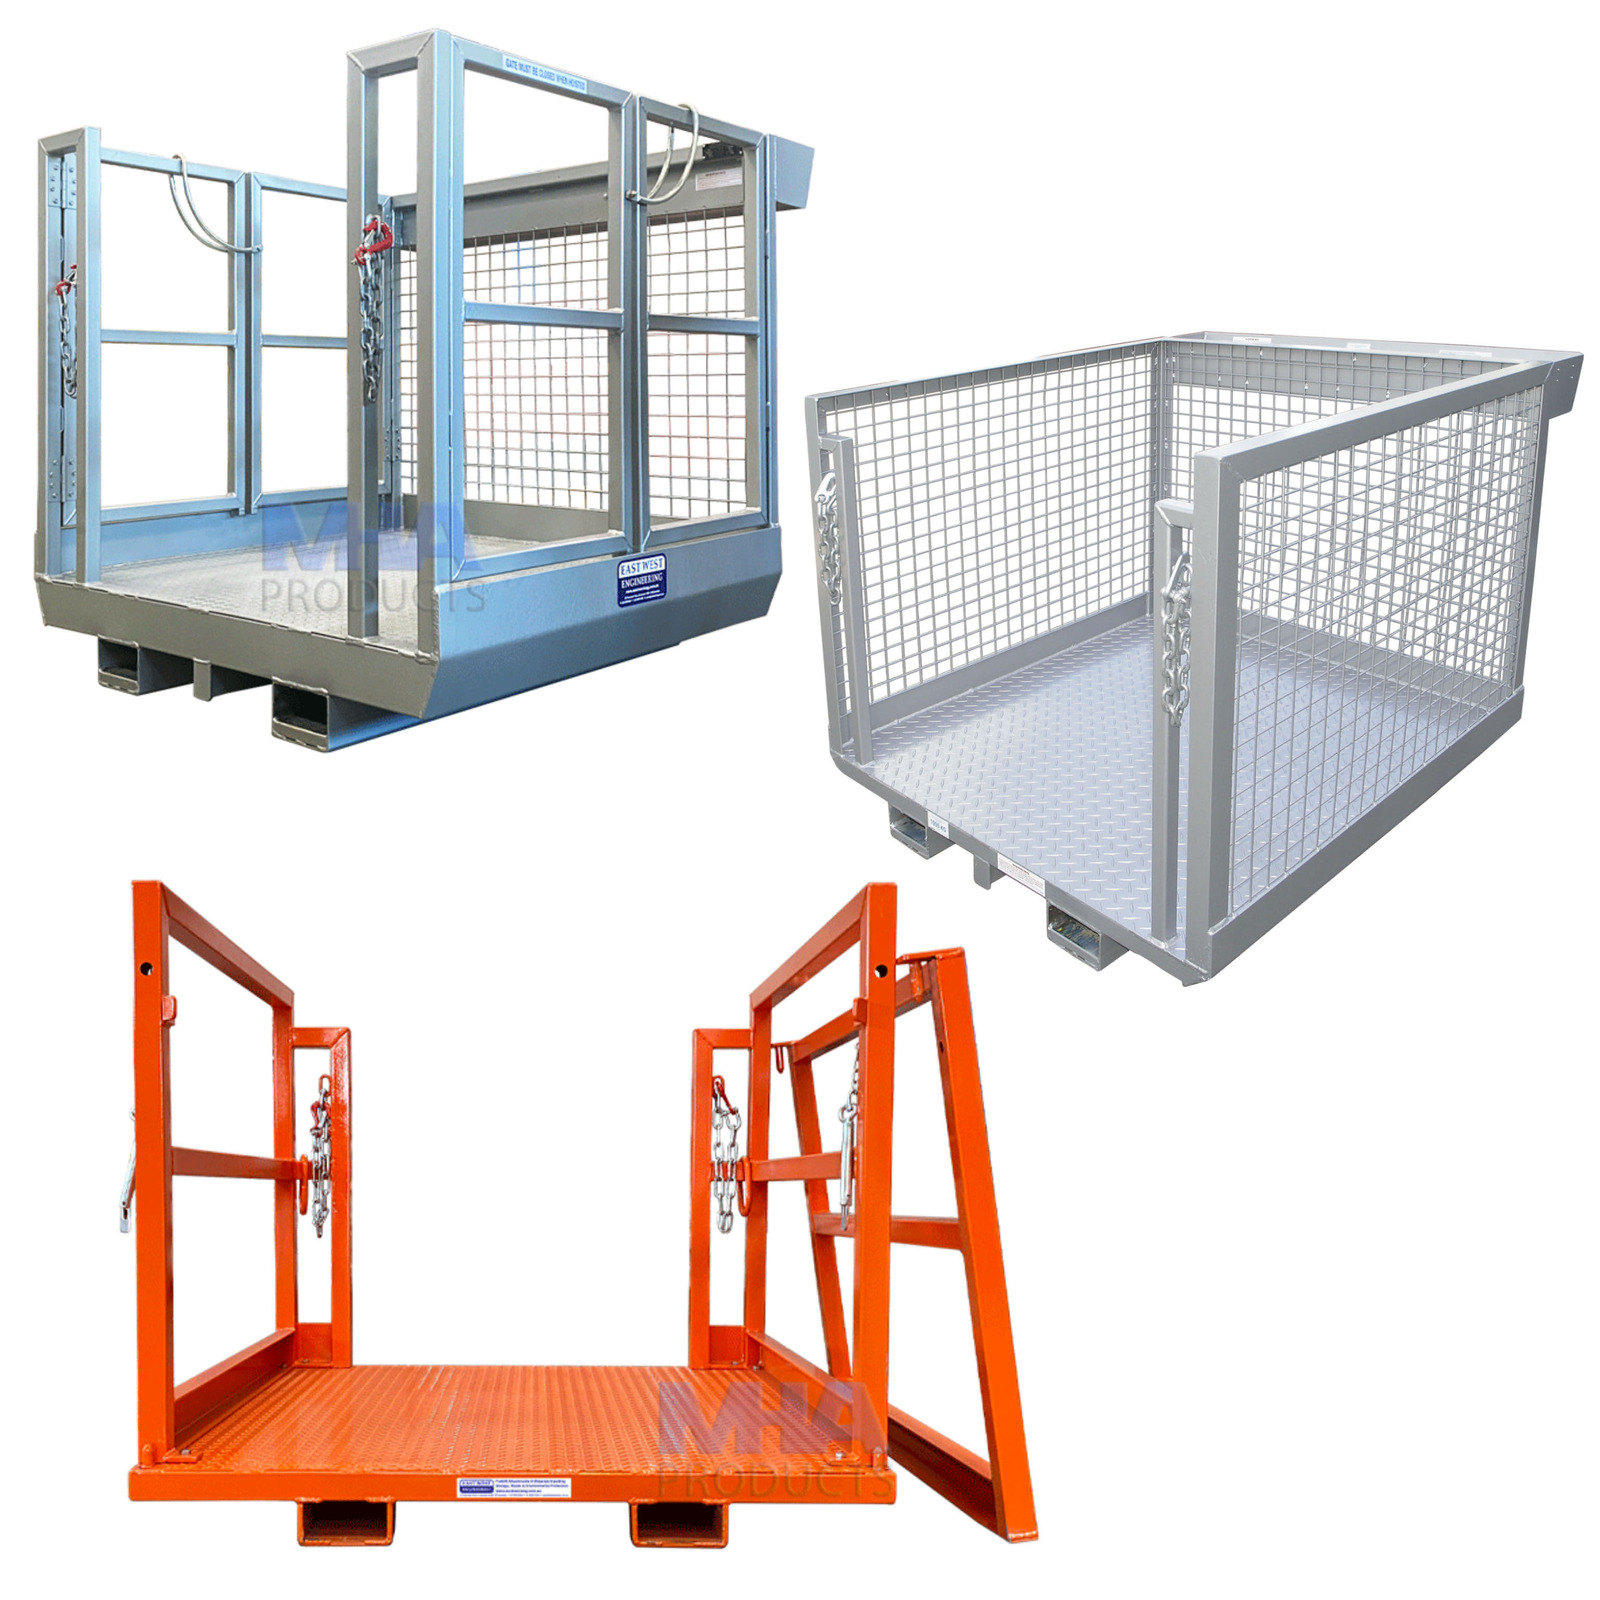 Order Picker Platform Cages